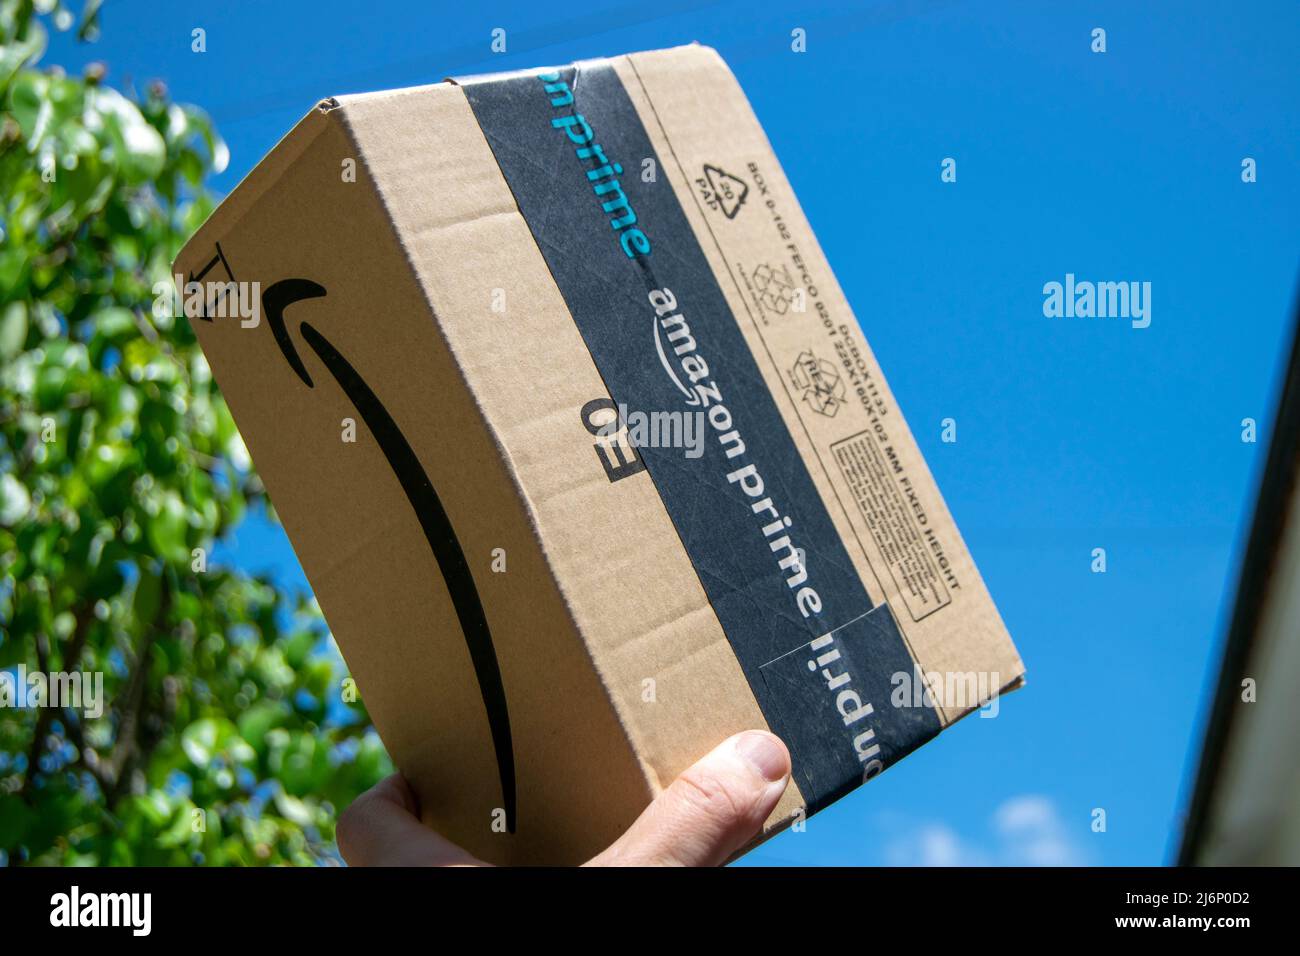 Amazon Prime schneller und erstklassiger Lieferservice. Amazon prime-Paket, Online-E-Commerce schnell und sicher. Lieferung Junge mit Amazon-Paket. Stockfoto